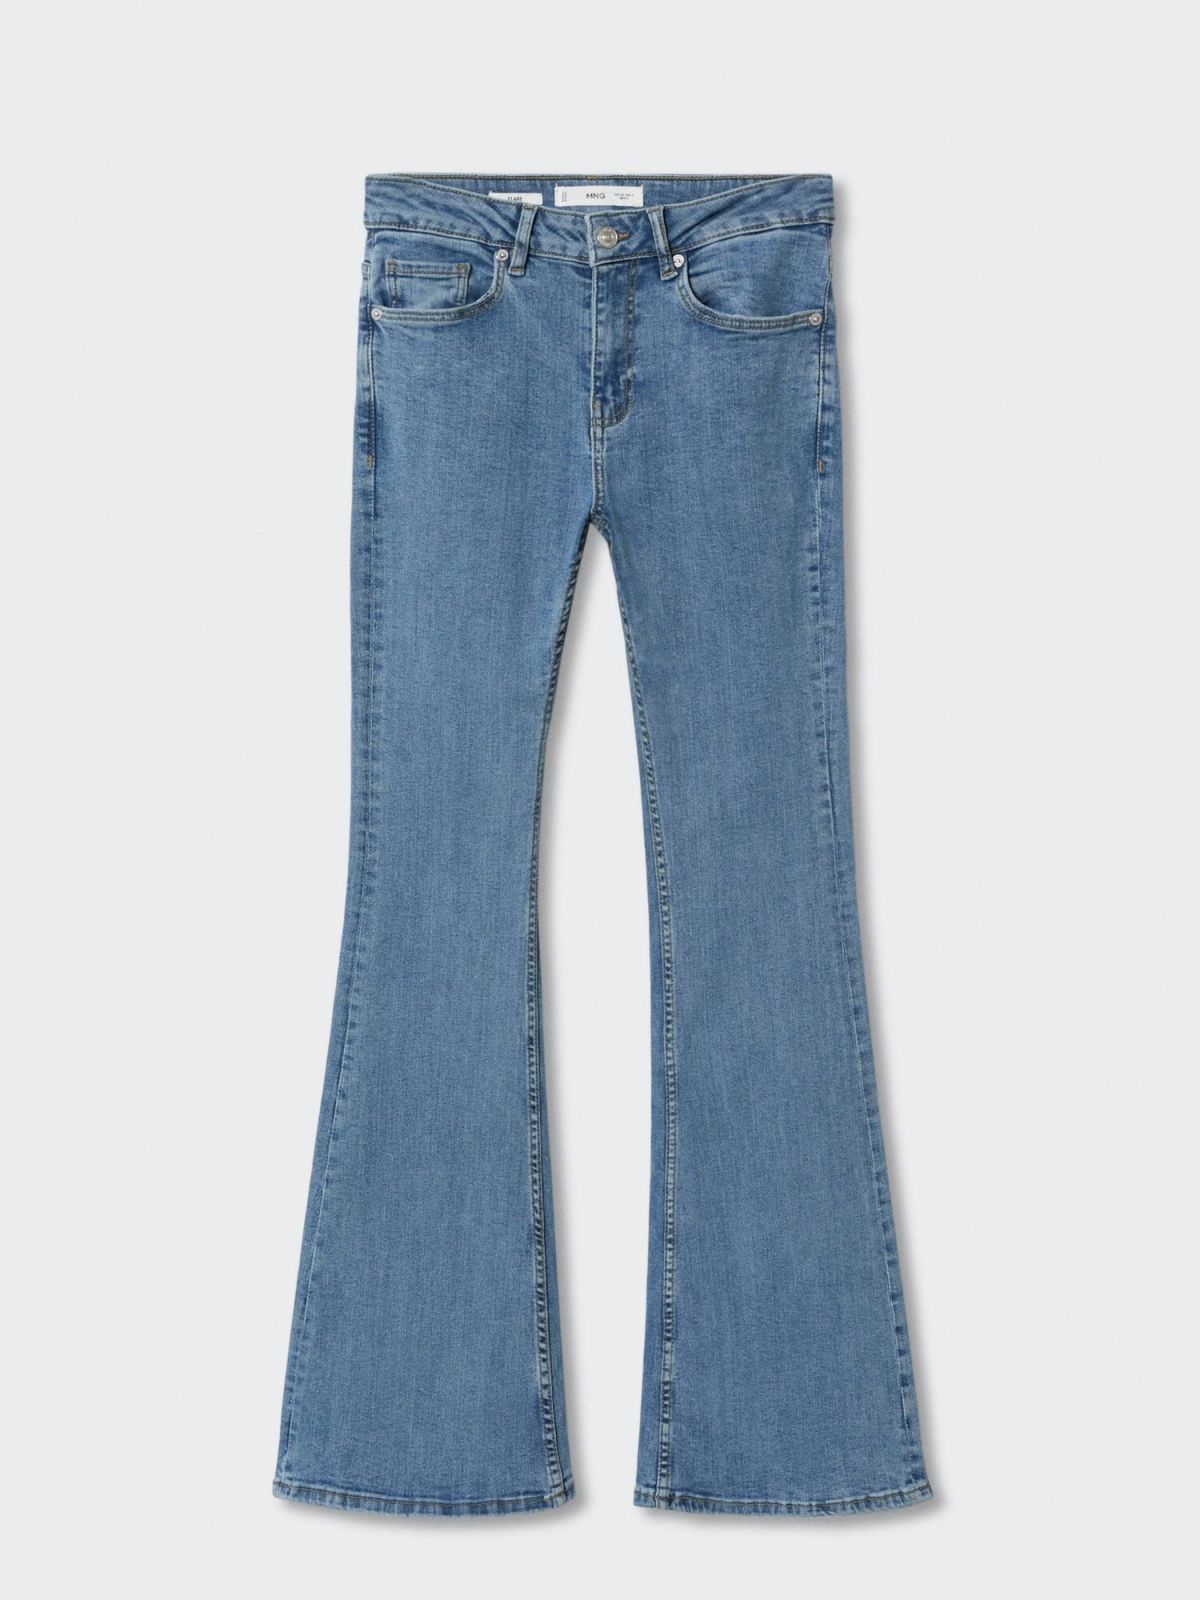  ג'ינס ארוך בגזרה מתרחבת Flare של MANGO